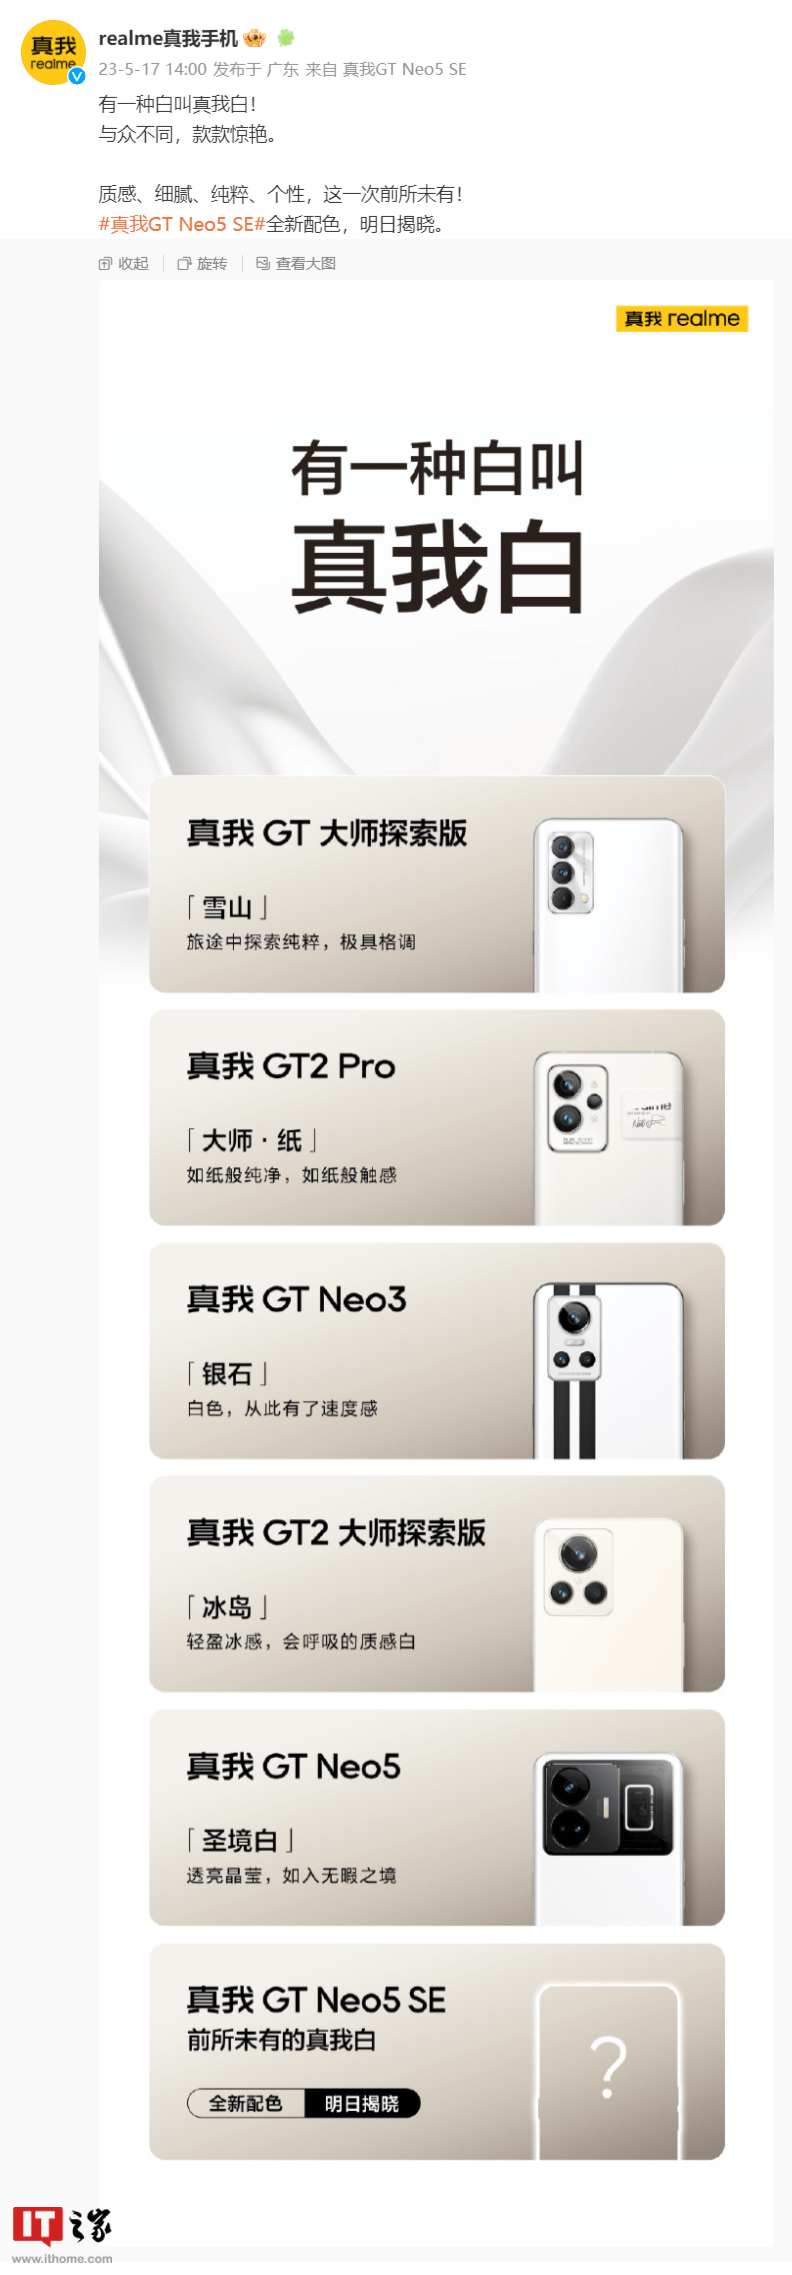 真我gtneo5手机参数配置:realme GT Neo5 SE 手机全新配色明日揭晓